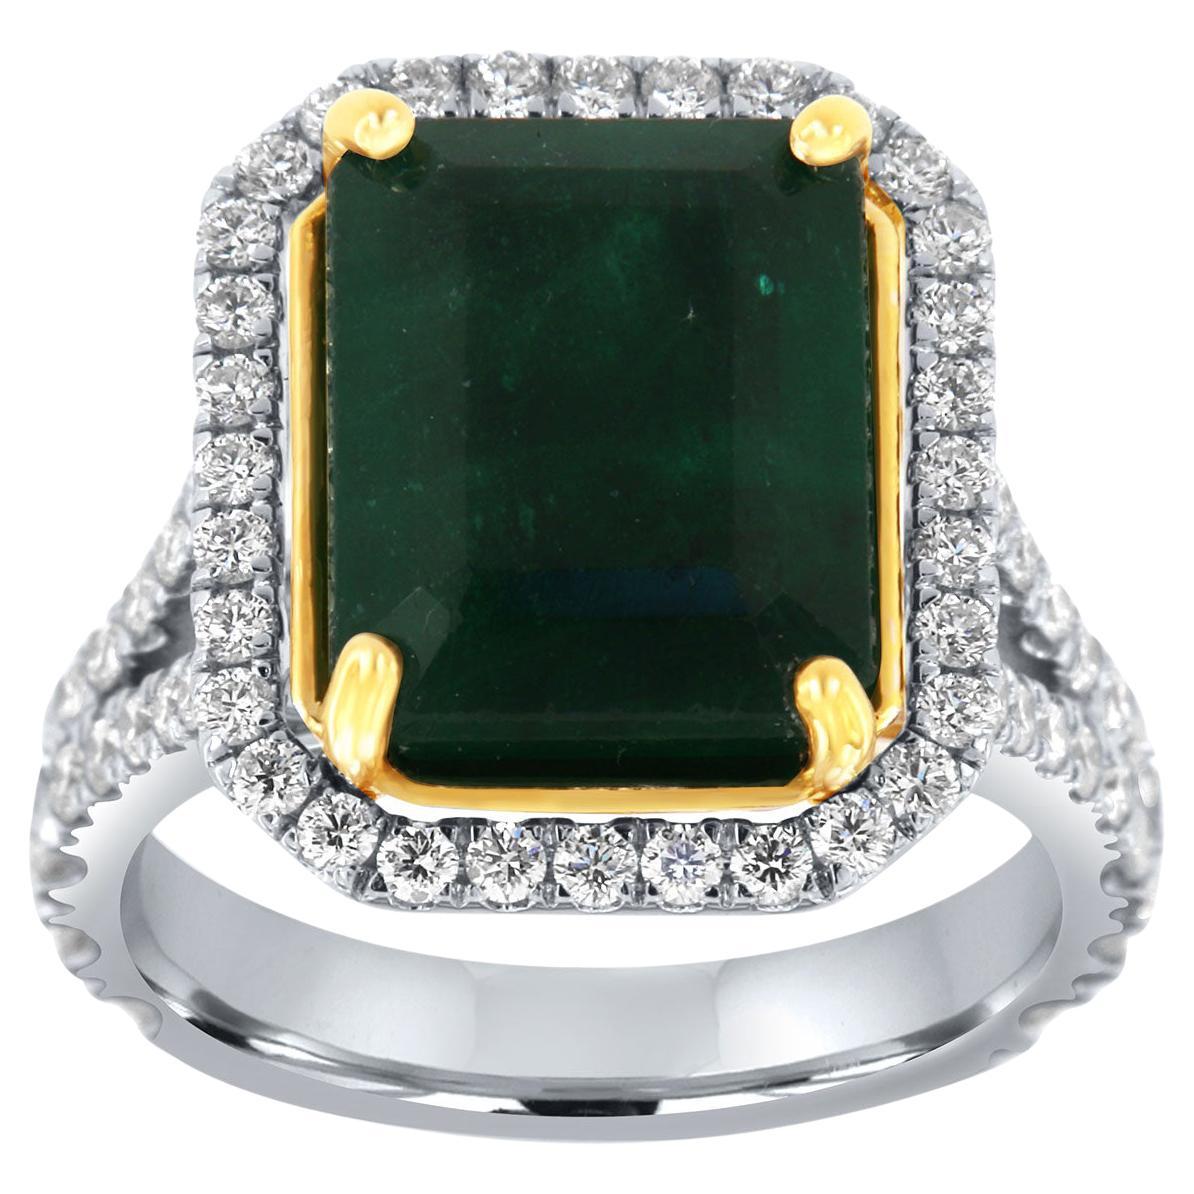 Bague en or blanc et jaune 18 carats avec halo de diamants et émeraude verte certifiée GIA de 6,82 carats